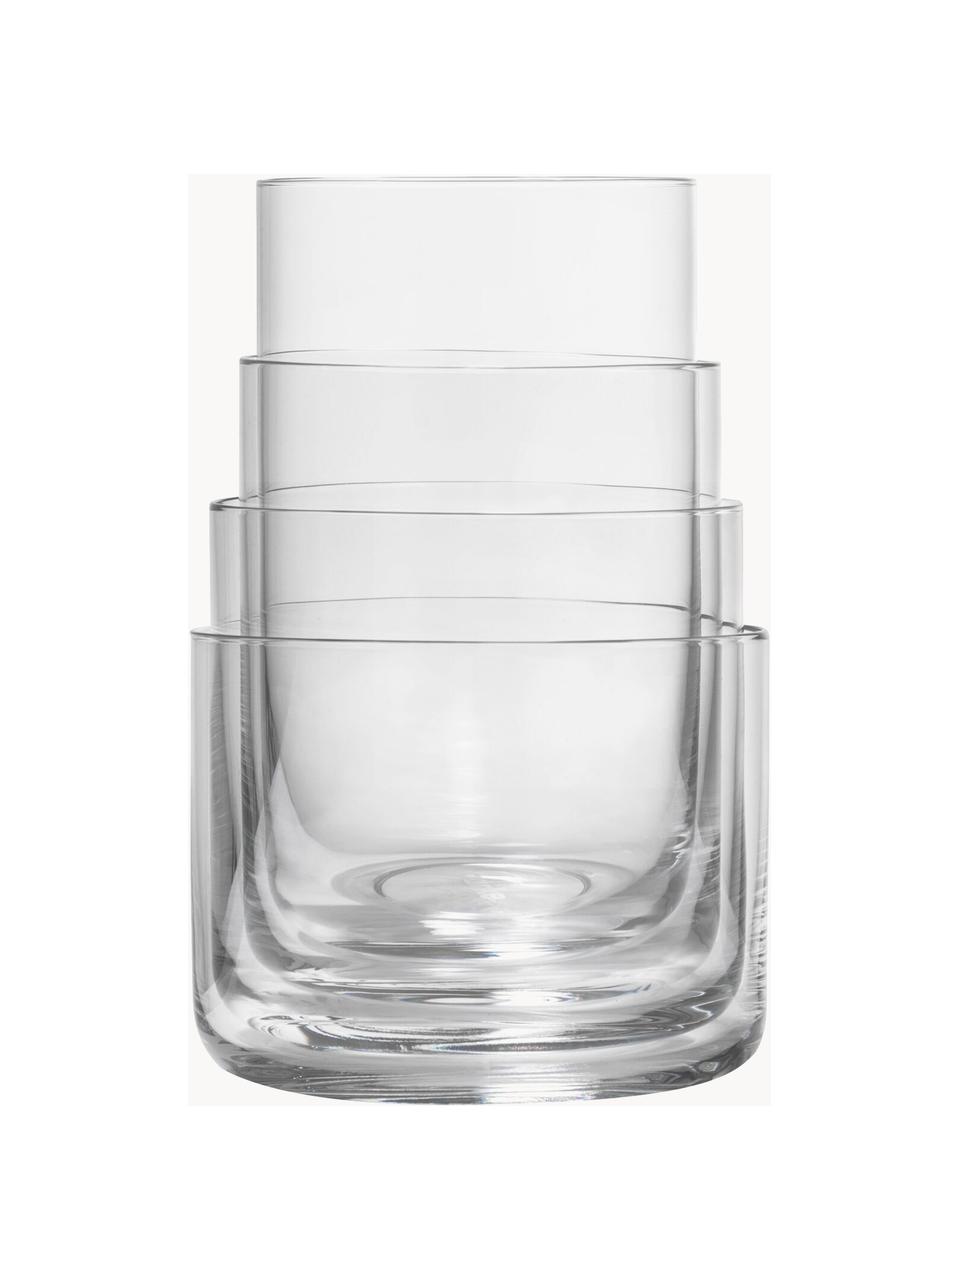 Set de vasos Nesting, 4 uds., Cristal, Transparente, Set de diferentes tamaños